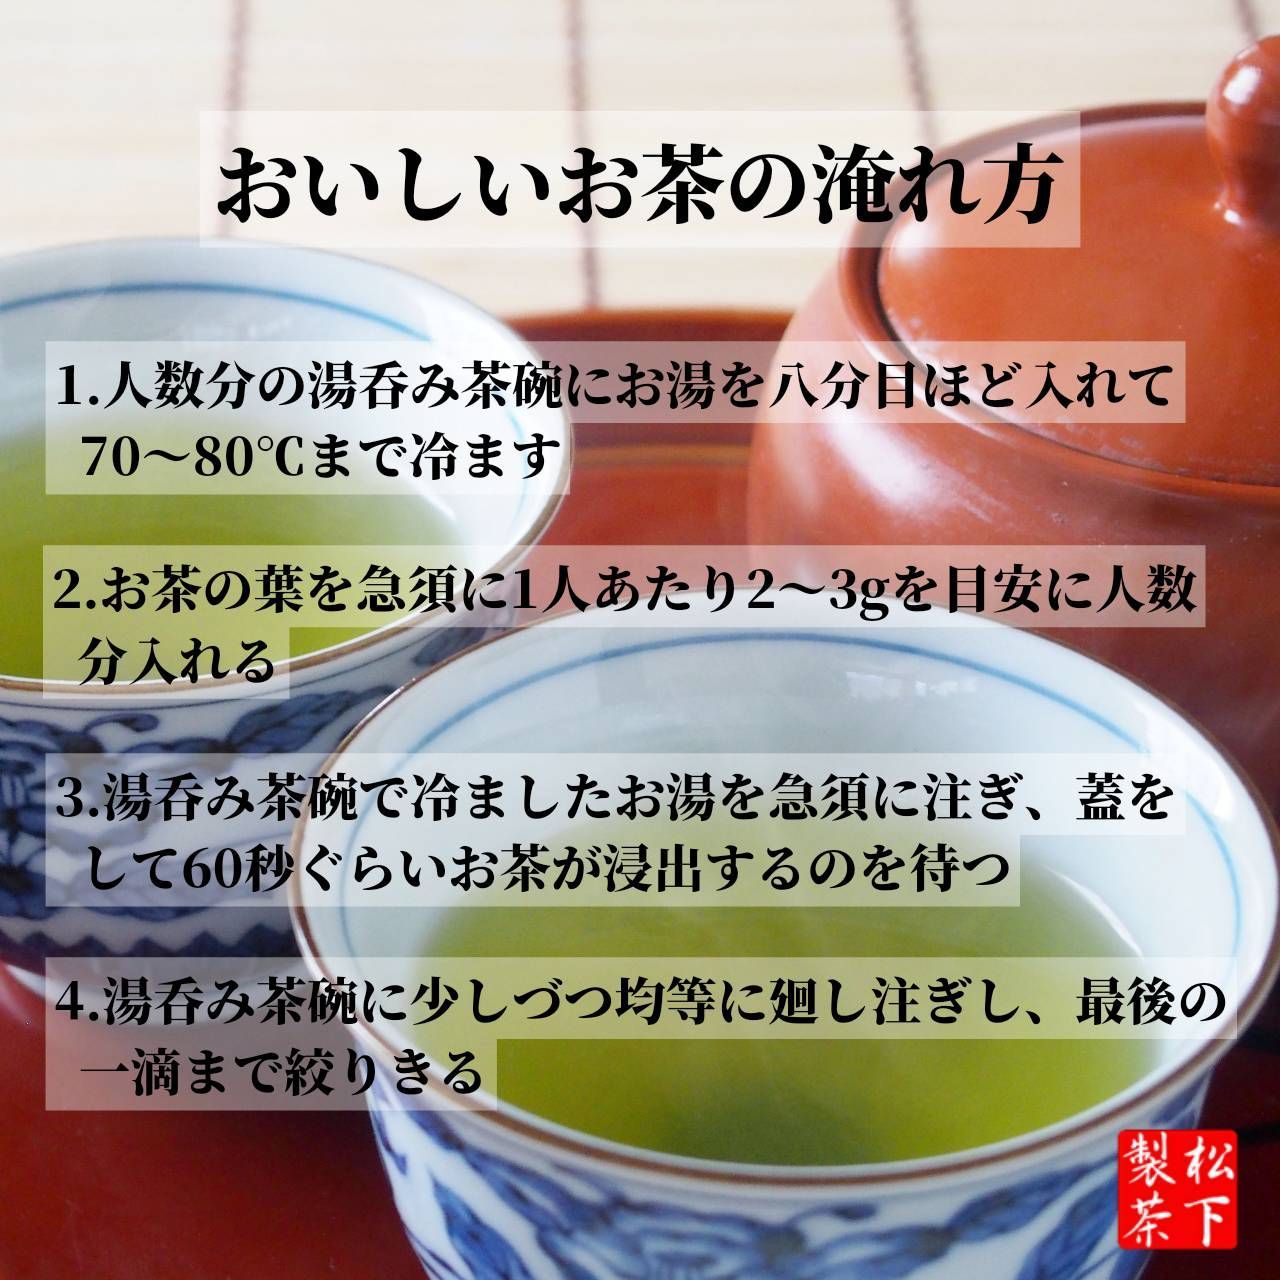 【2022年産】種子島の有機緑茶『やぶきた』 茶葉(リーフ) 100g 松下製茶-7